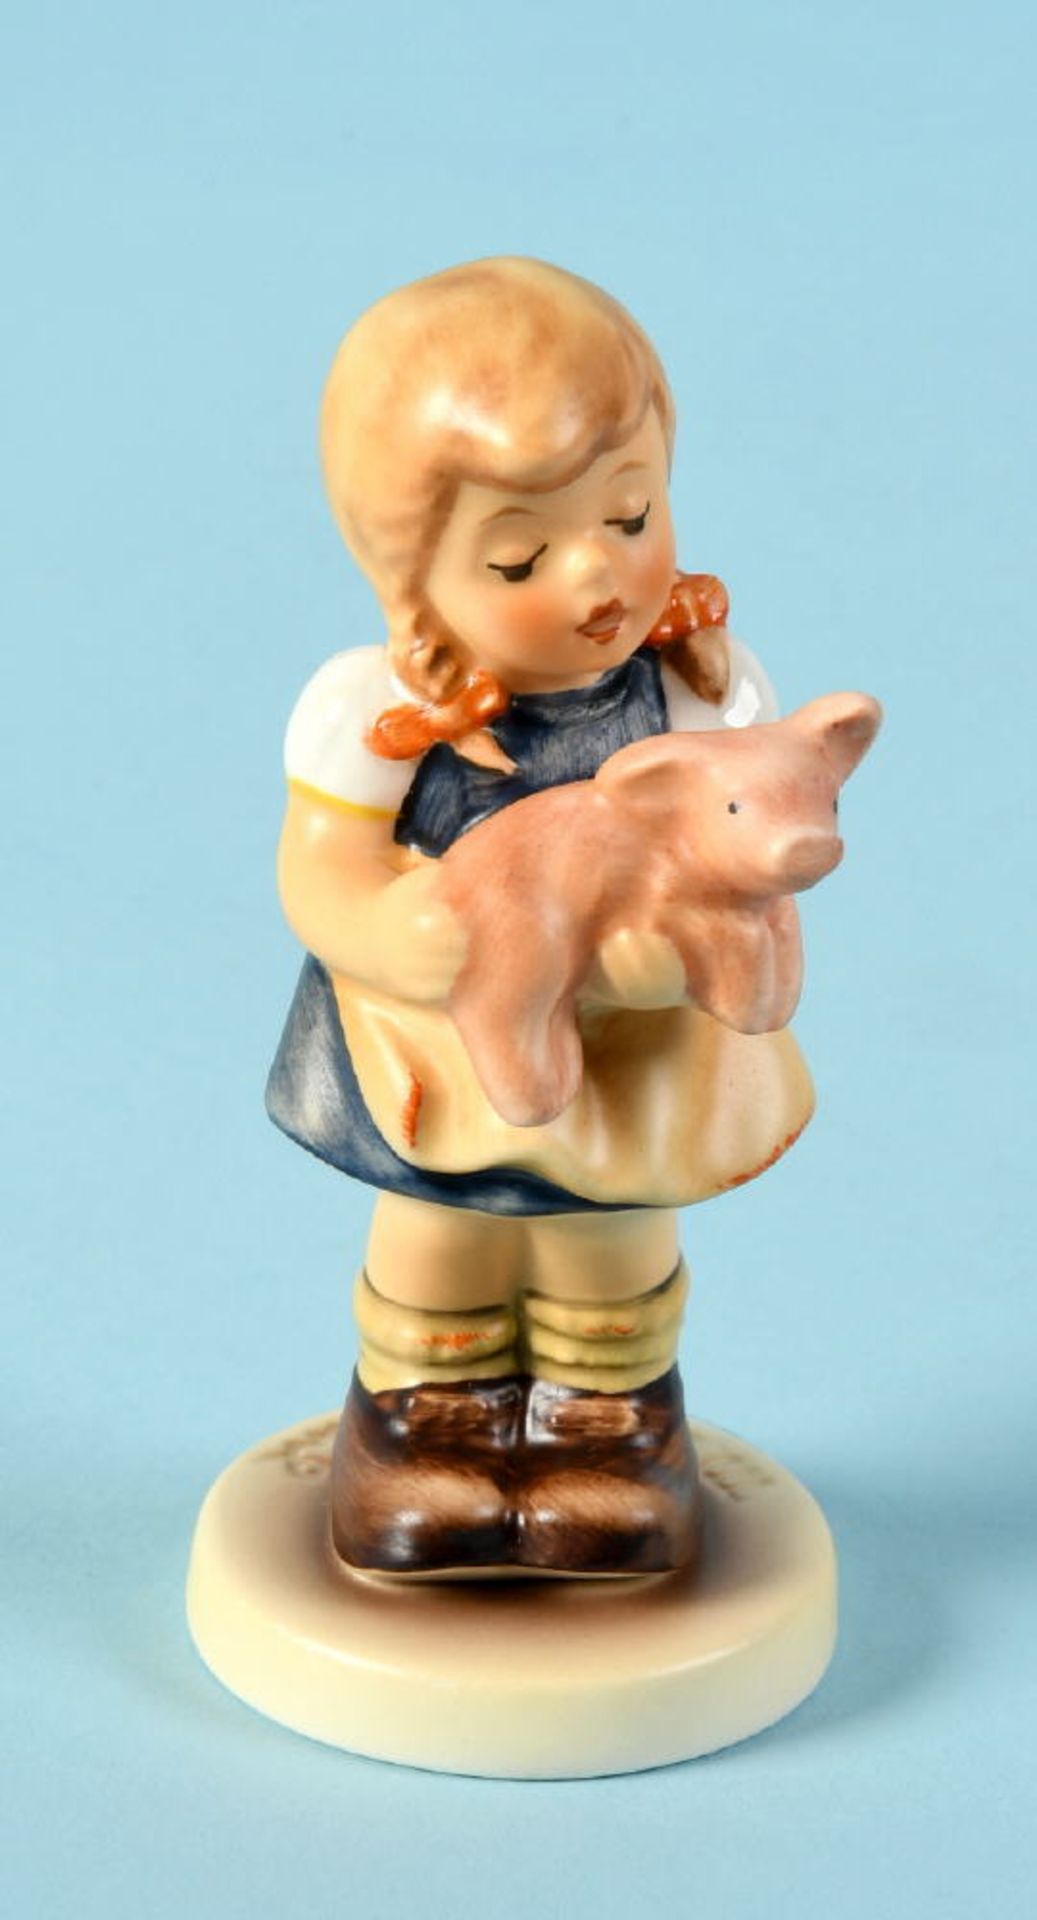 Hummelfigur - Mein Glücksschweinchen, Nr. 2052